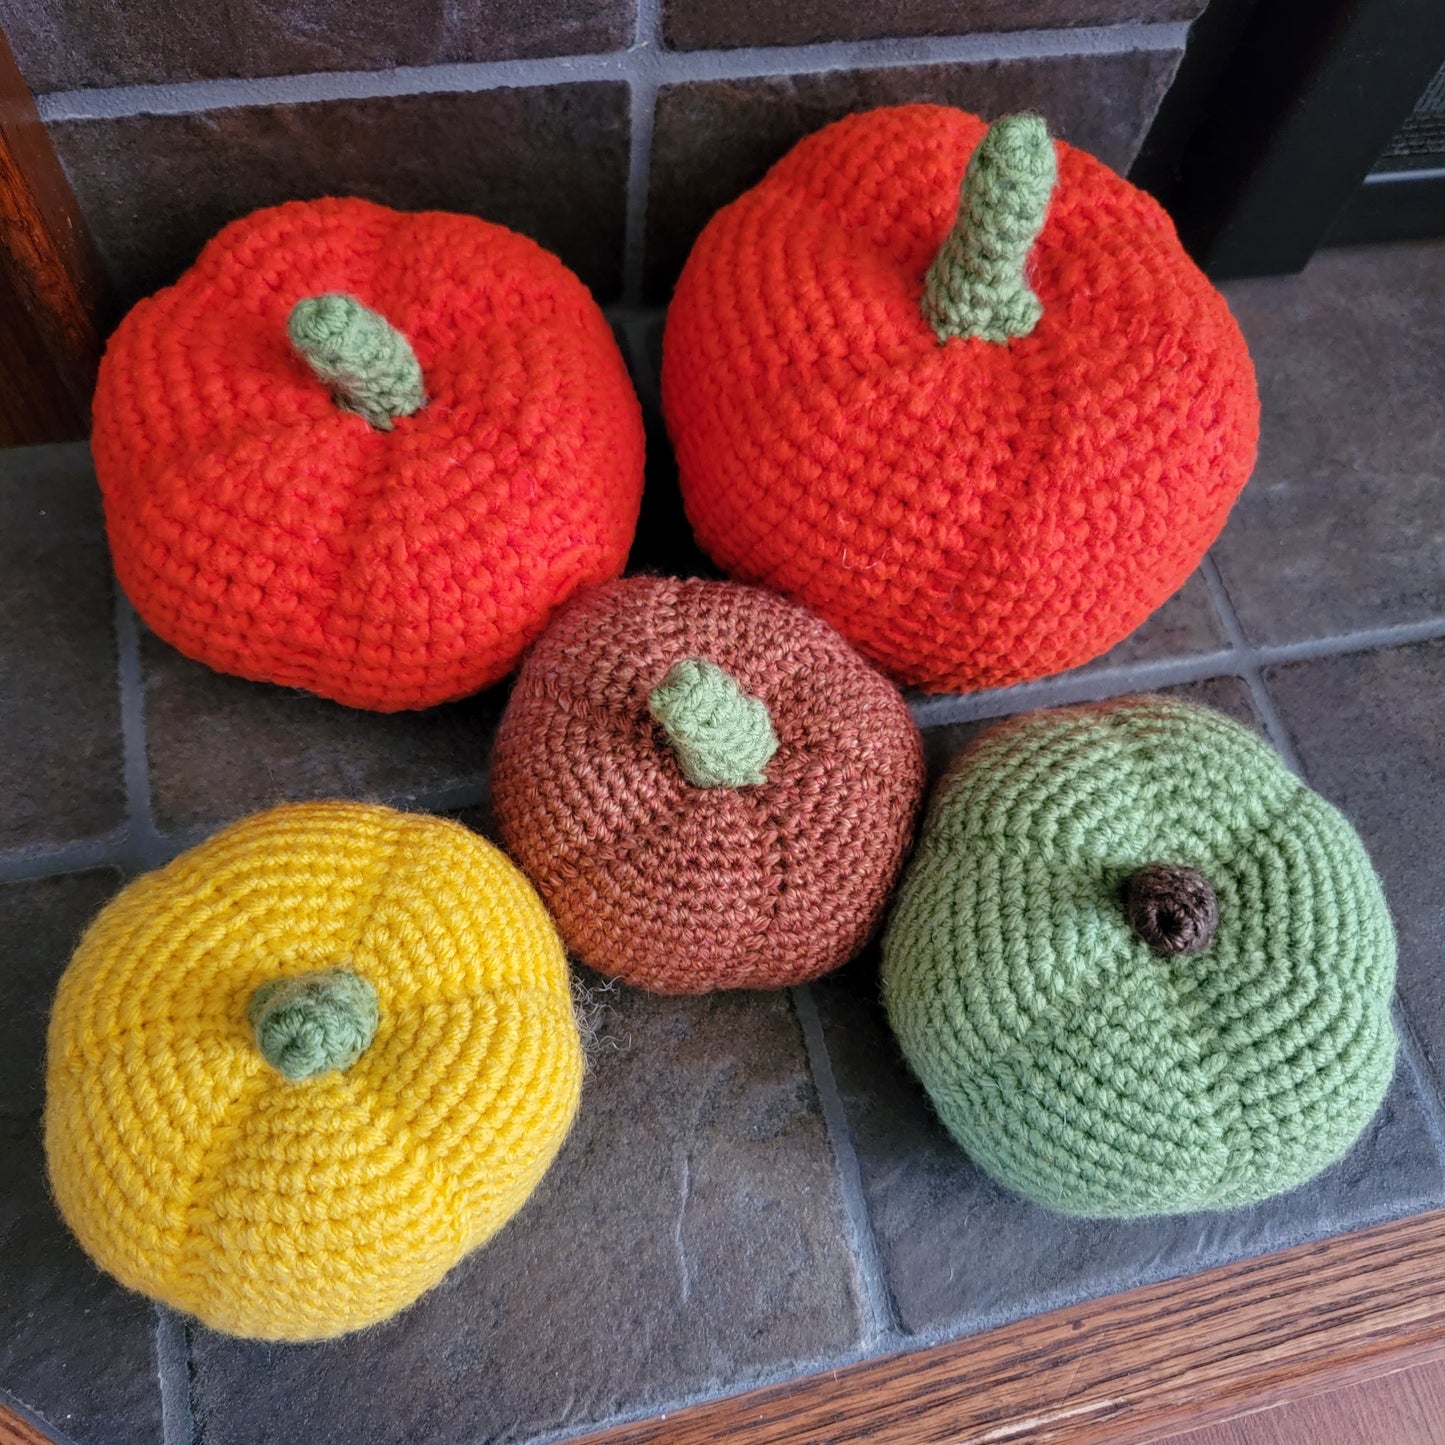 Rustic crochet pumpkins